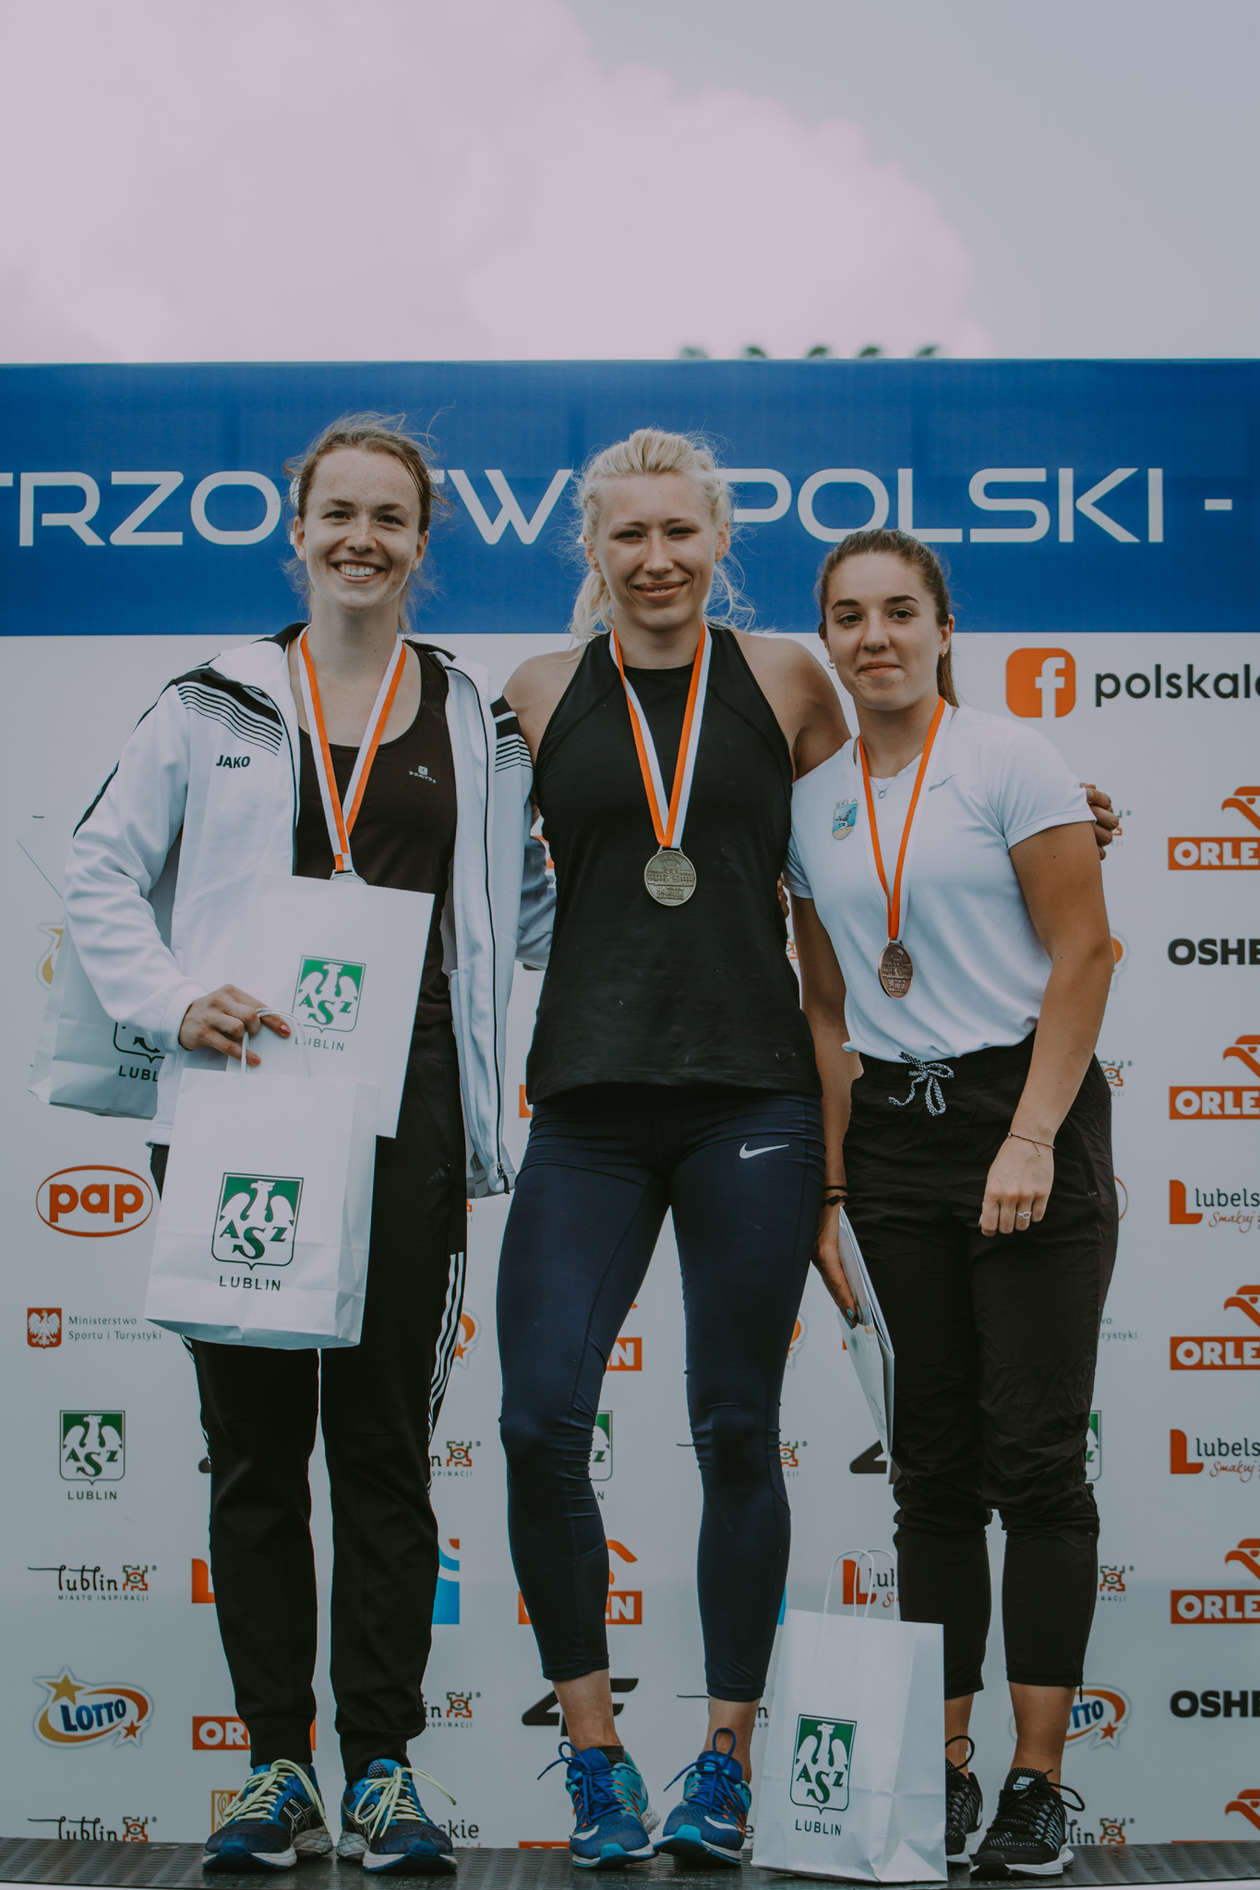  Mistrzostwa Polski w Lekkiej Atletyce. Dzień drugi (zdjęcie 2) - Autor: Bartek Wójtowicz